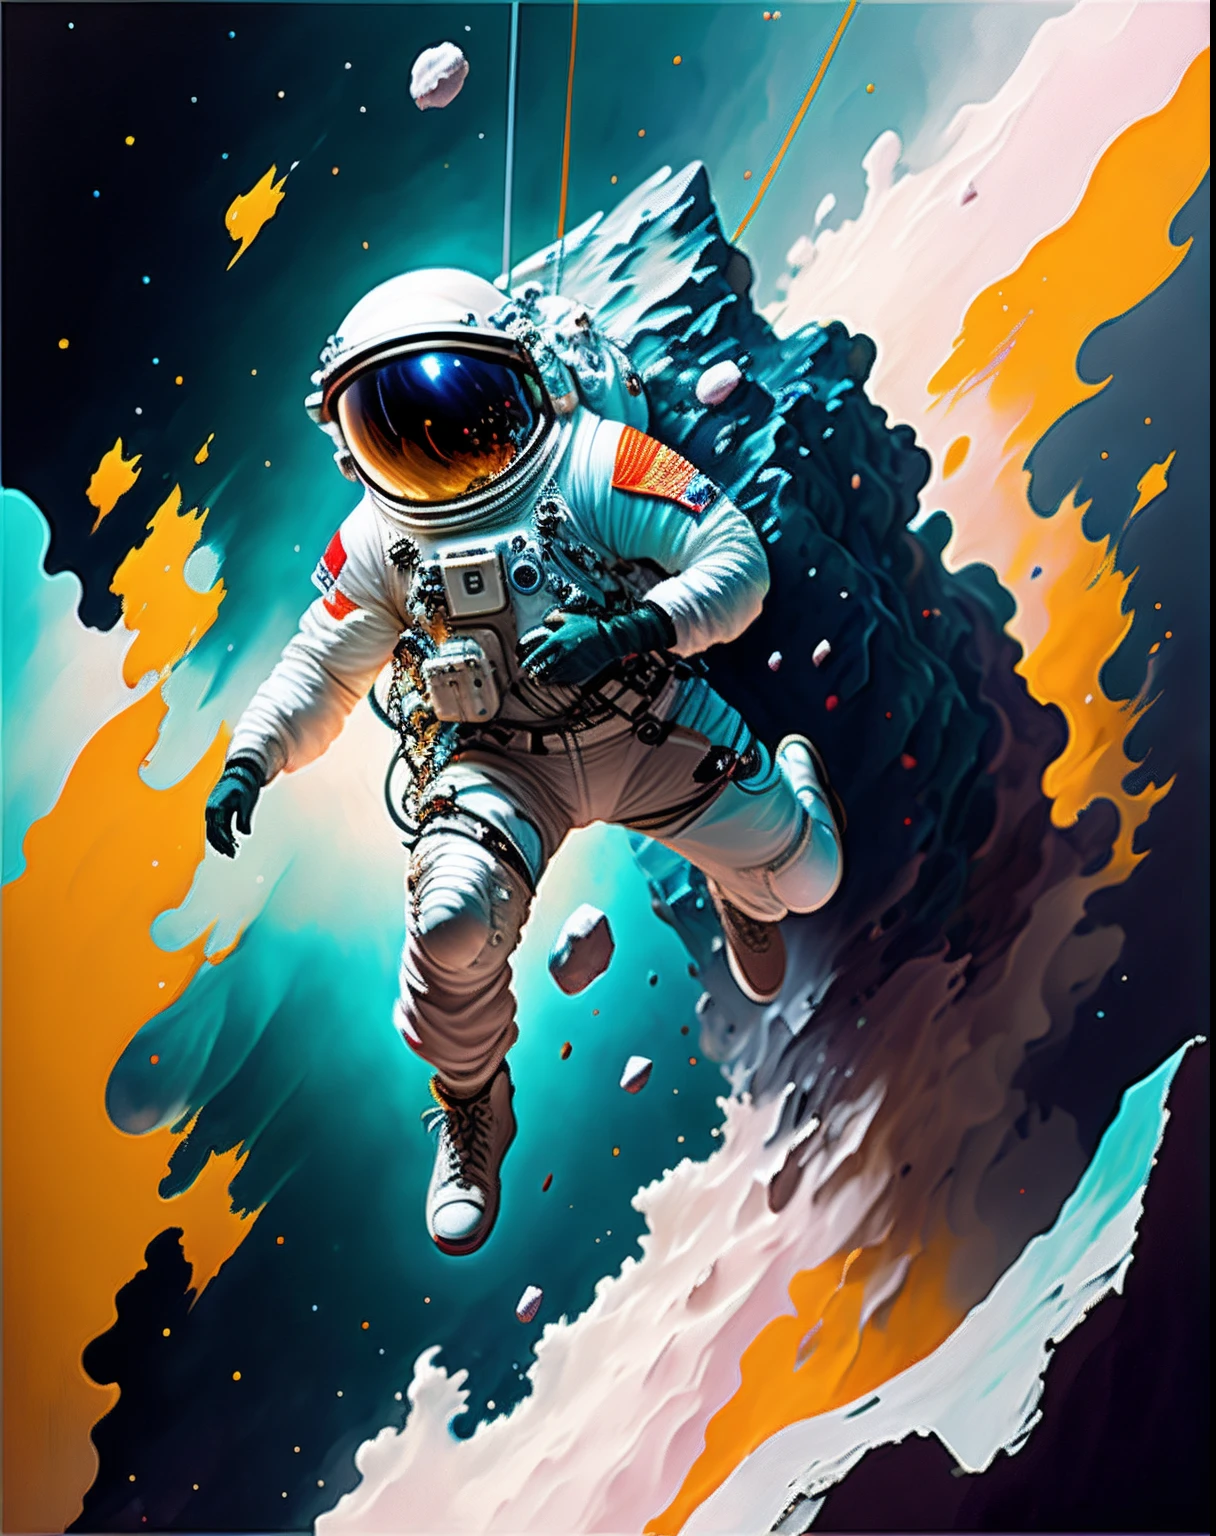 宇航员,  攀登小行星,  角色渲染, 超高品质模型, 空灵背景, 抽象美, 爆炸体积, 油画, 重击, 油漆滴落